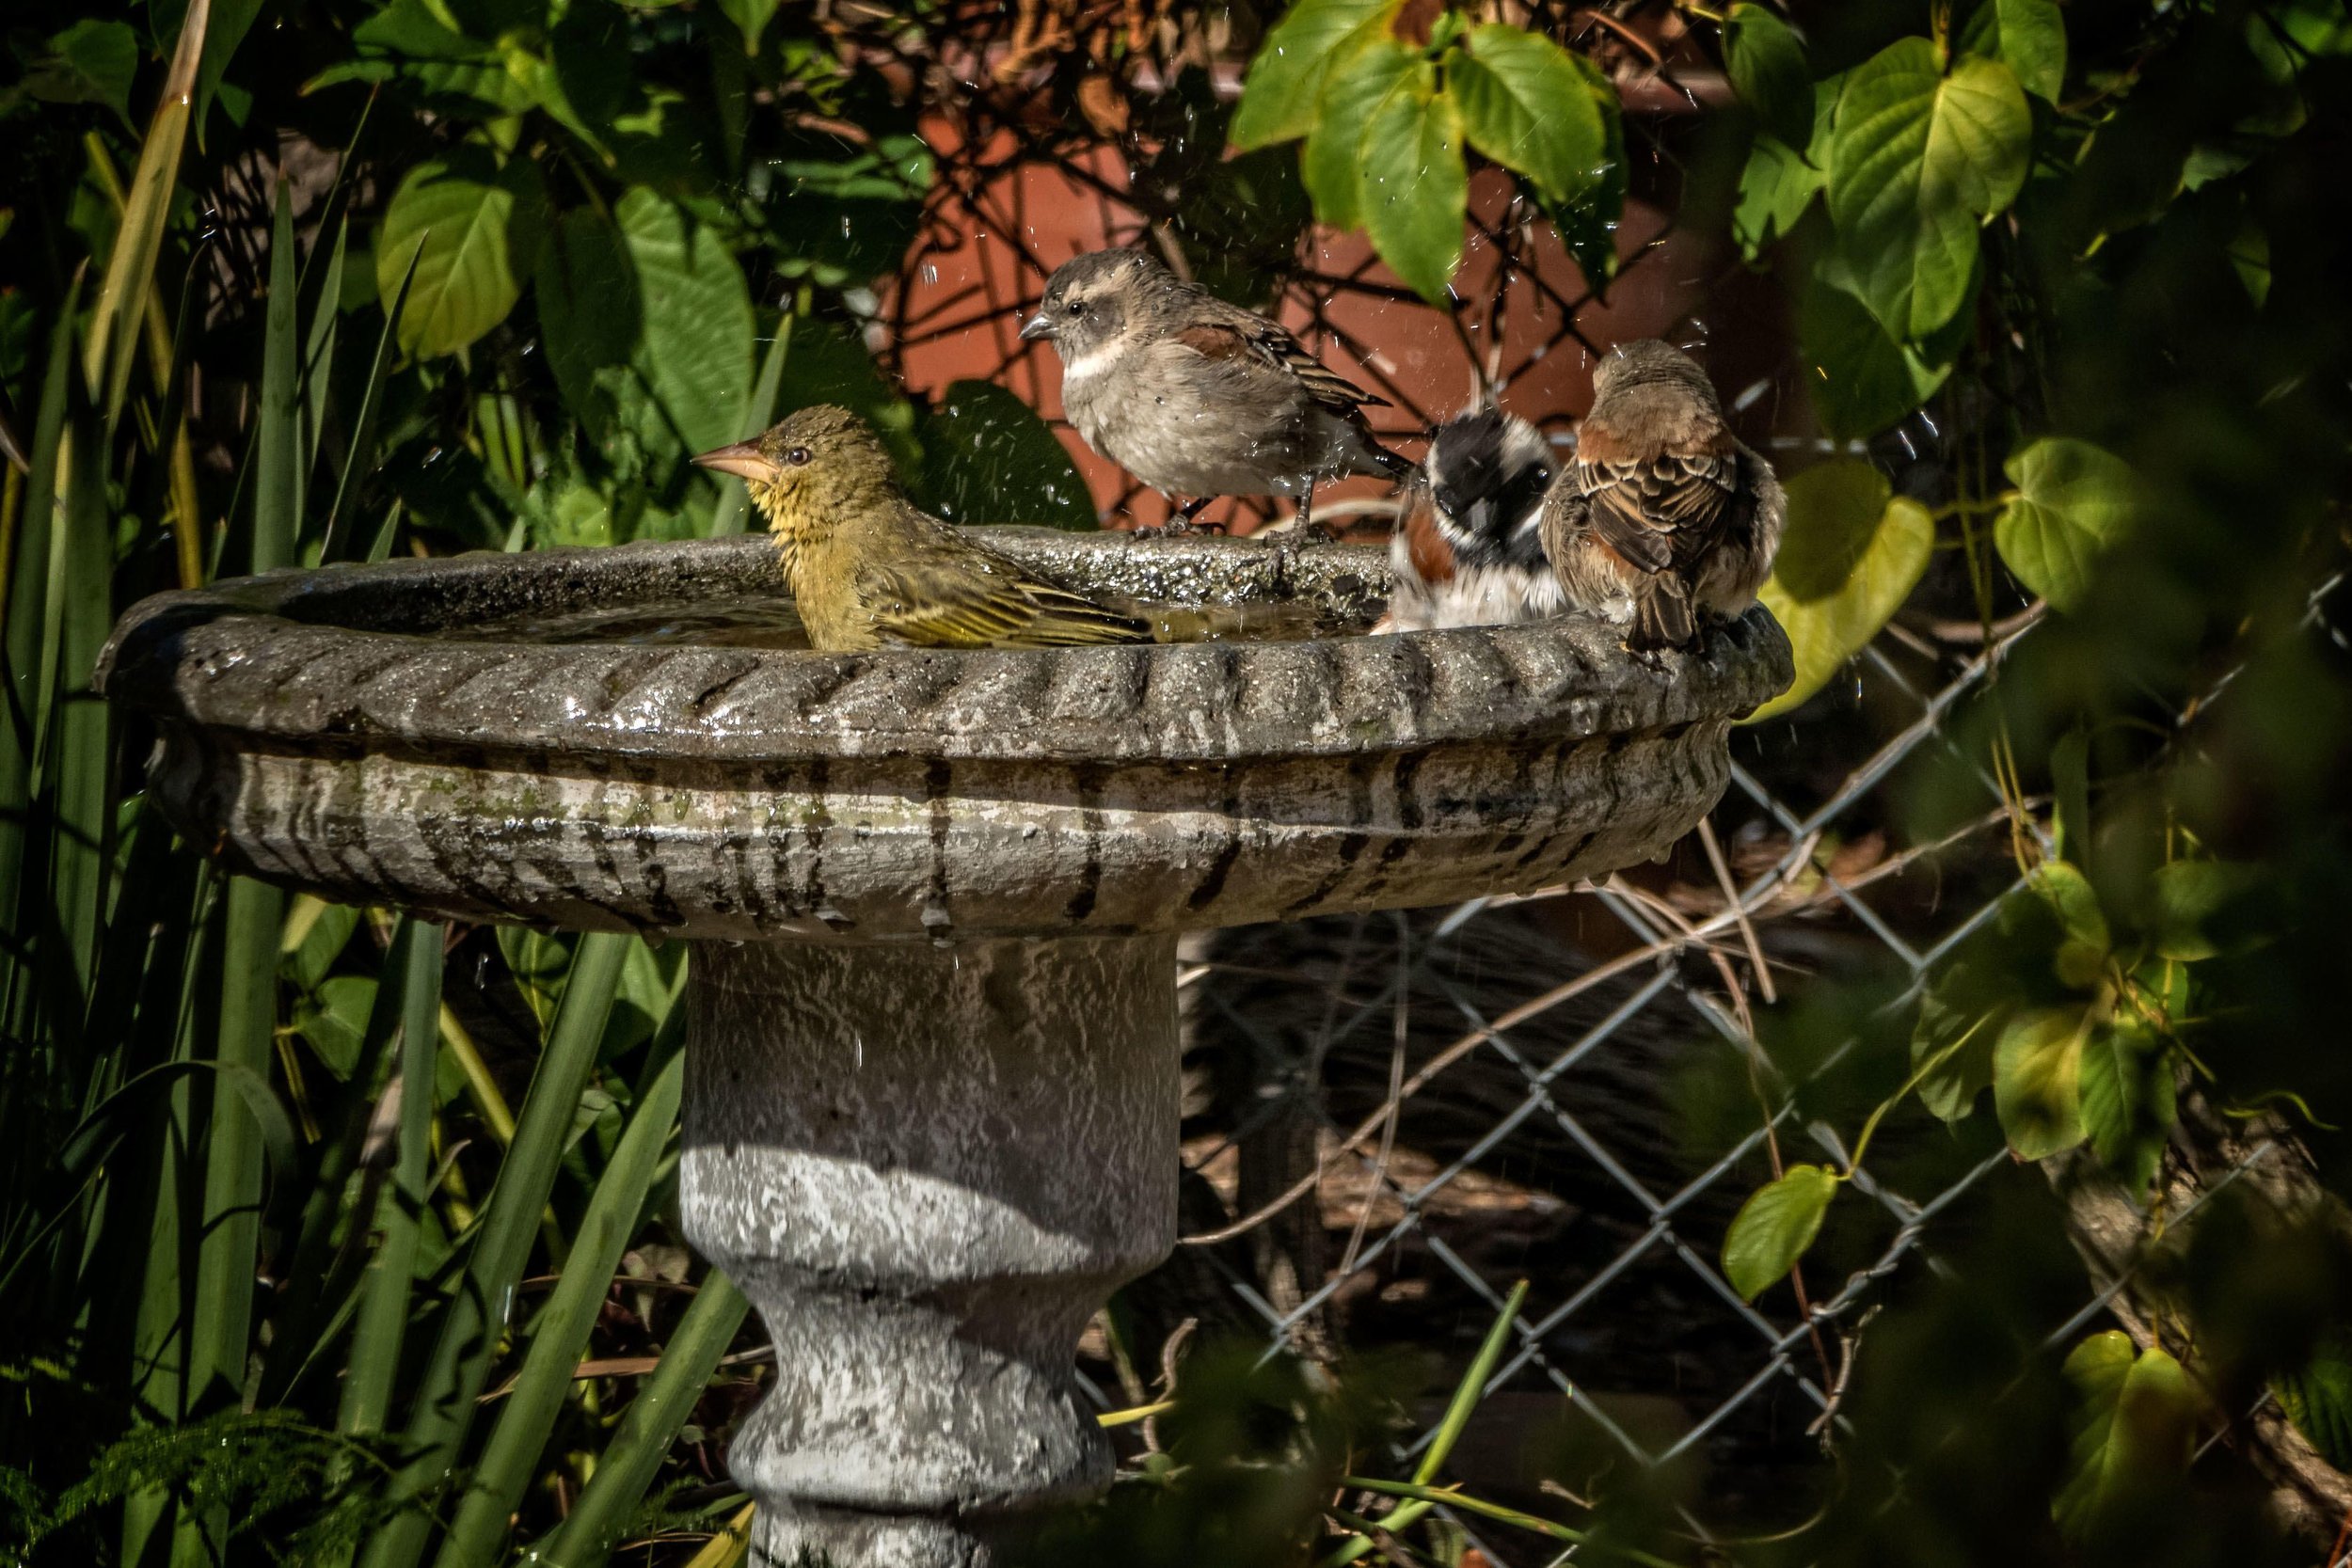 Sparrows enjoying a bath